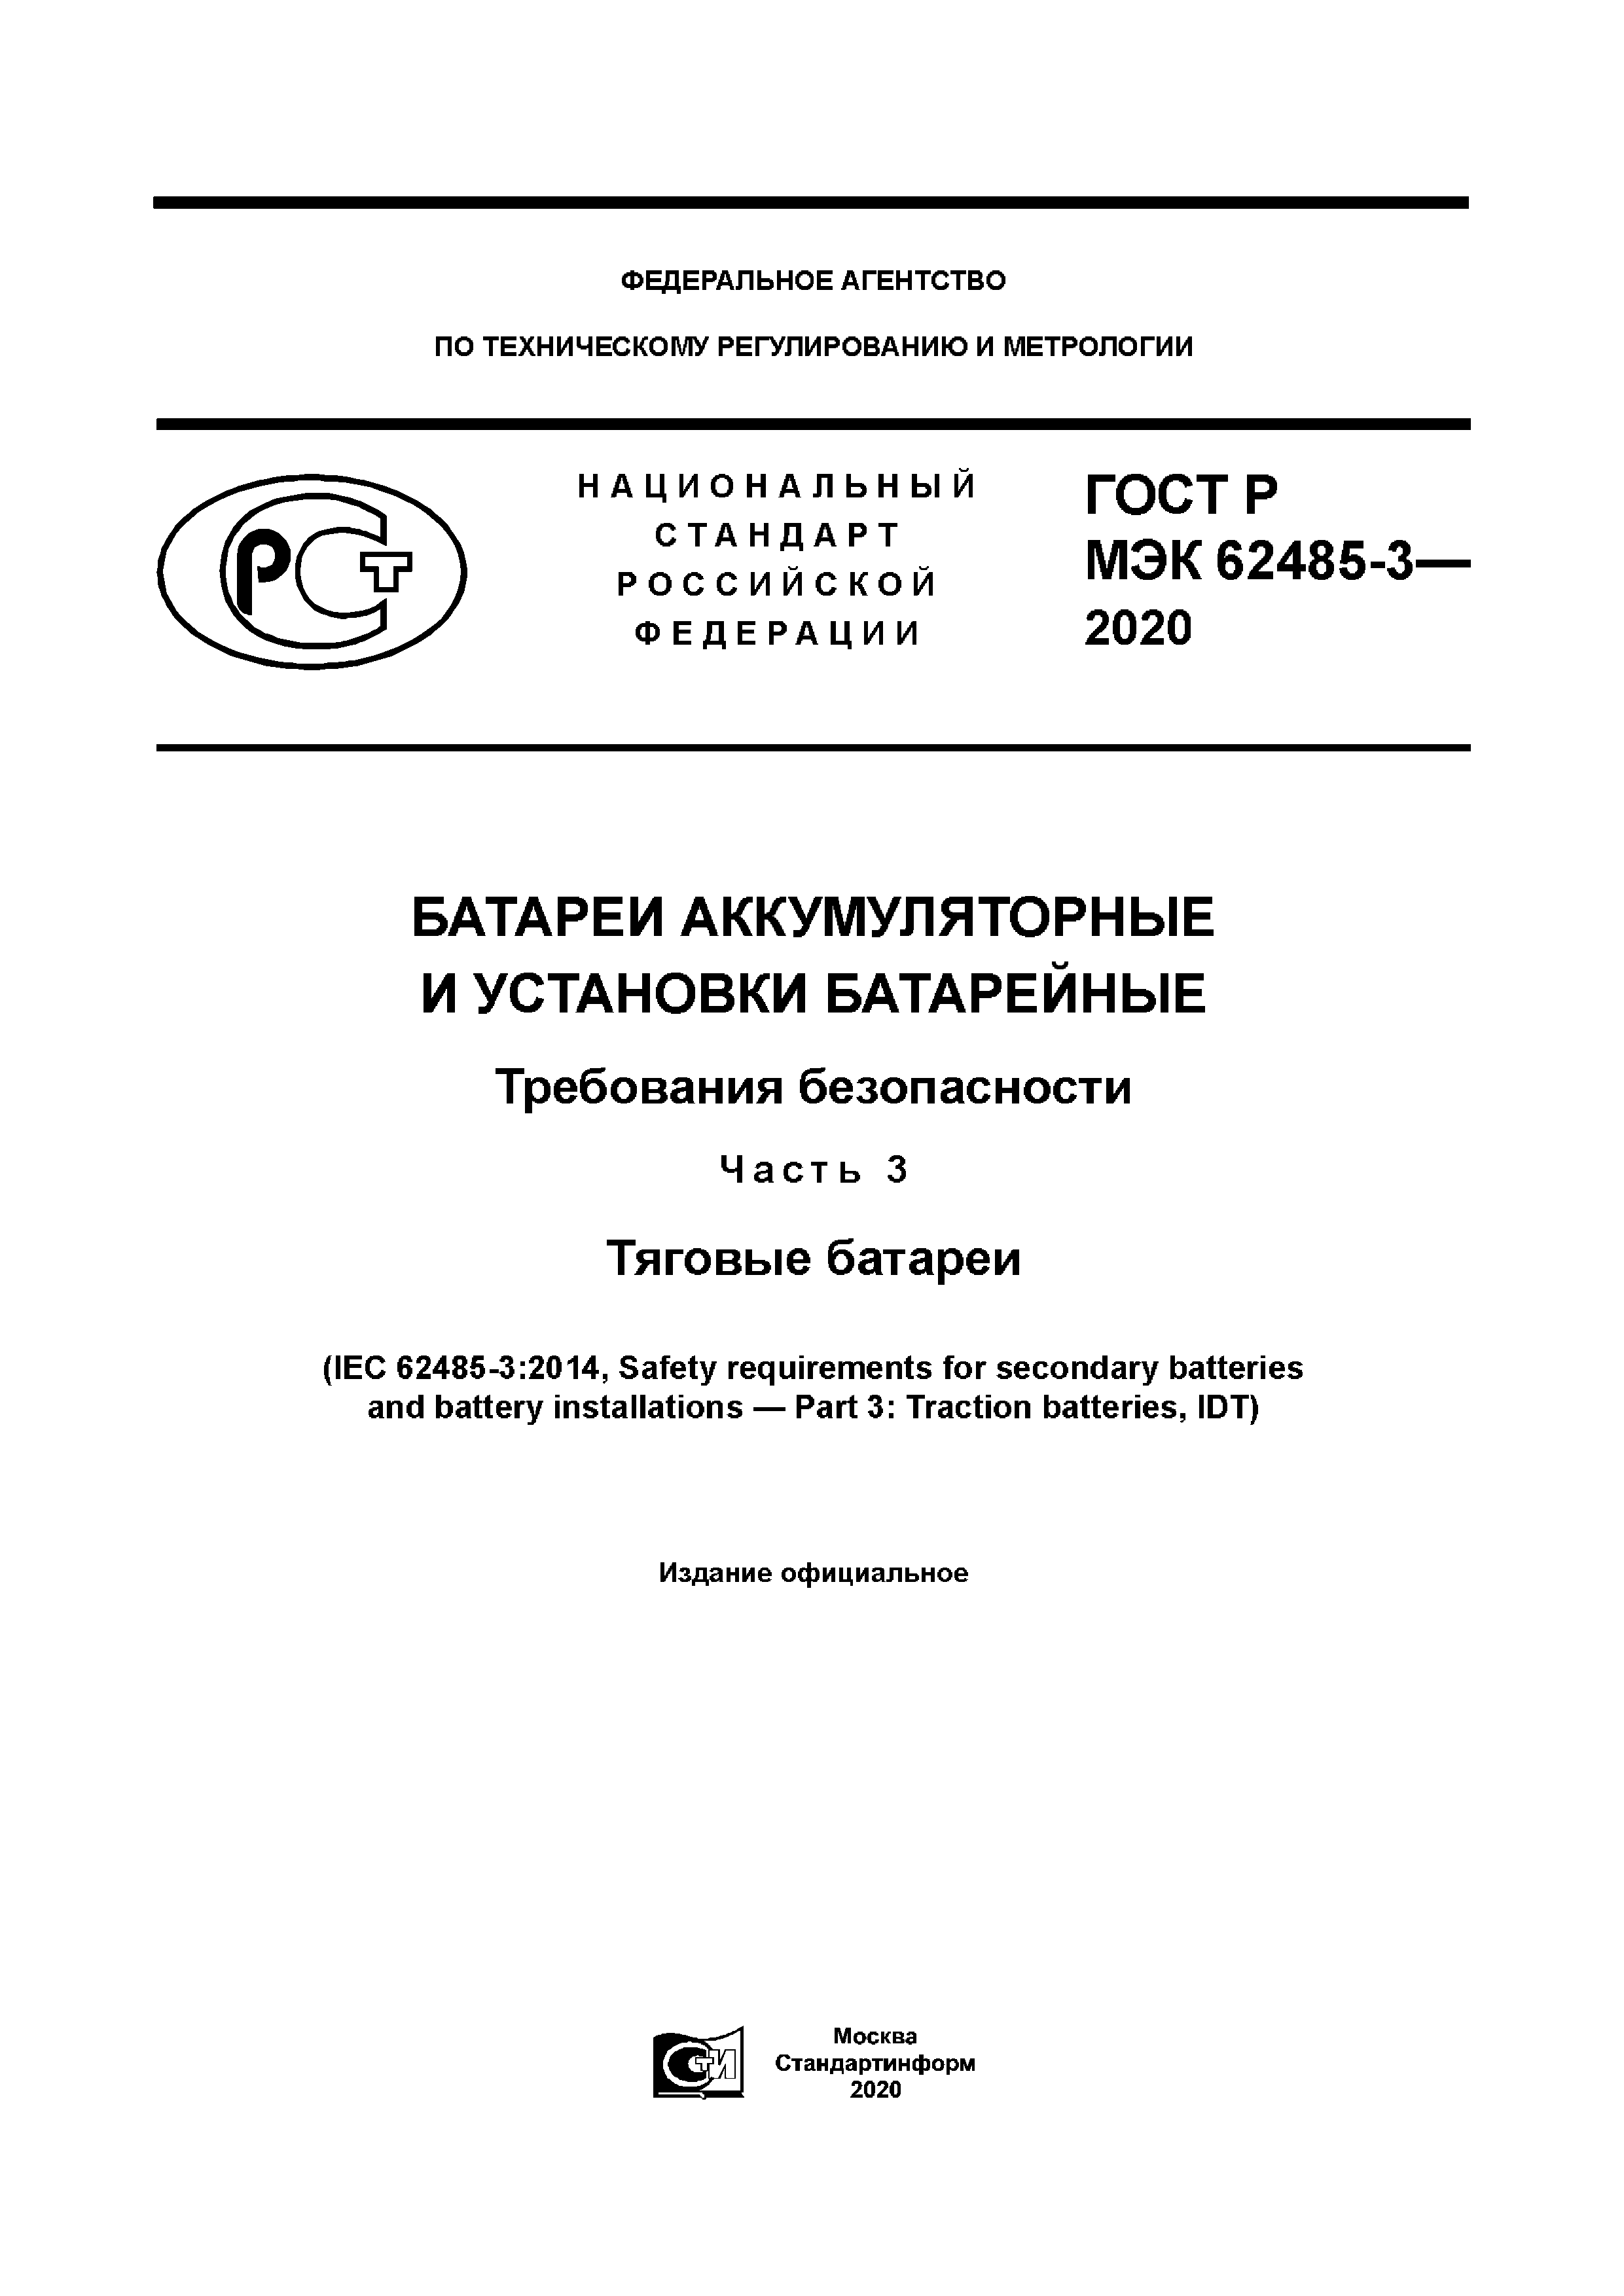 ГОСТ Р МЭК 62485-3-2020